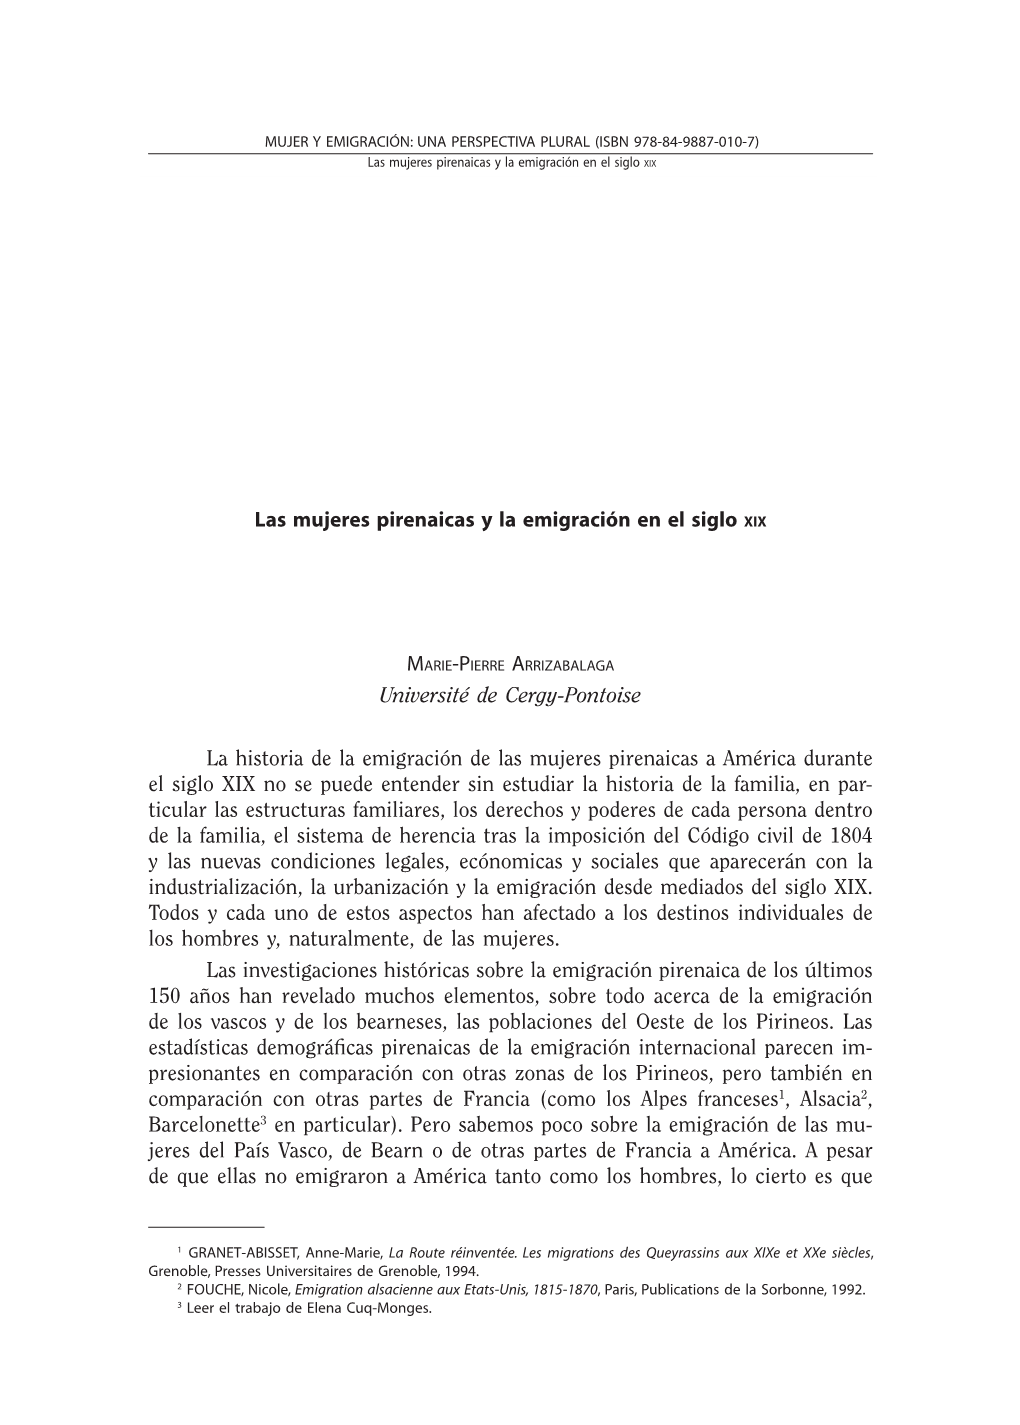 Las Mujeres Pirenaicas Y La Emigración En El Siglo Xix Marie-Pierre Arrizabalaga